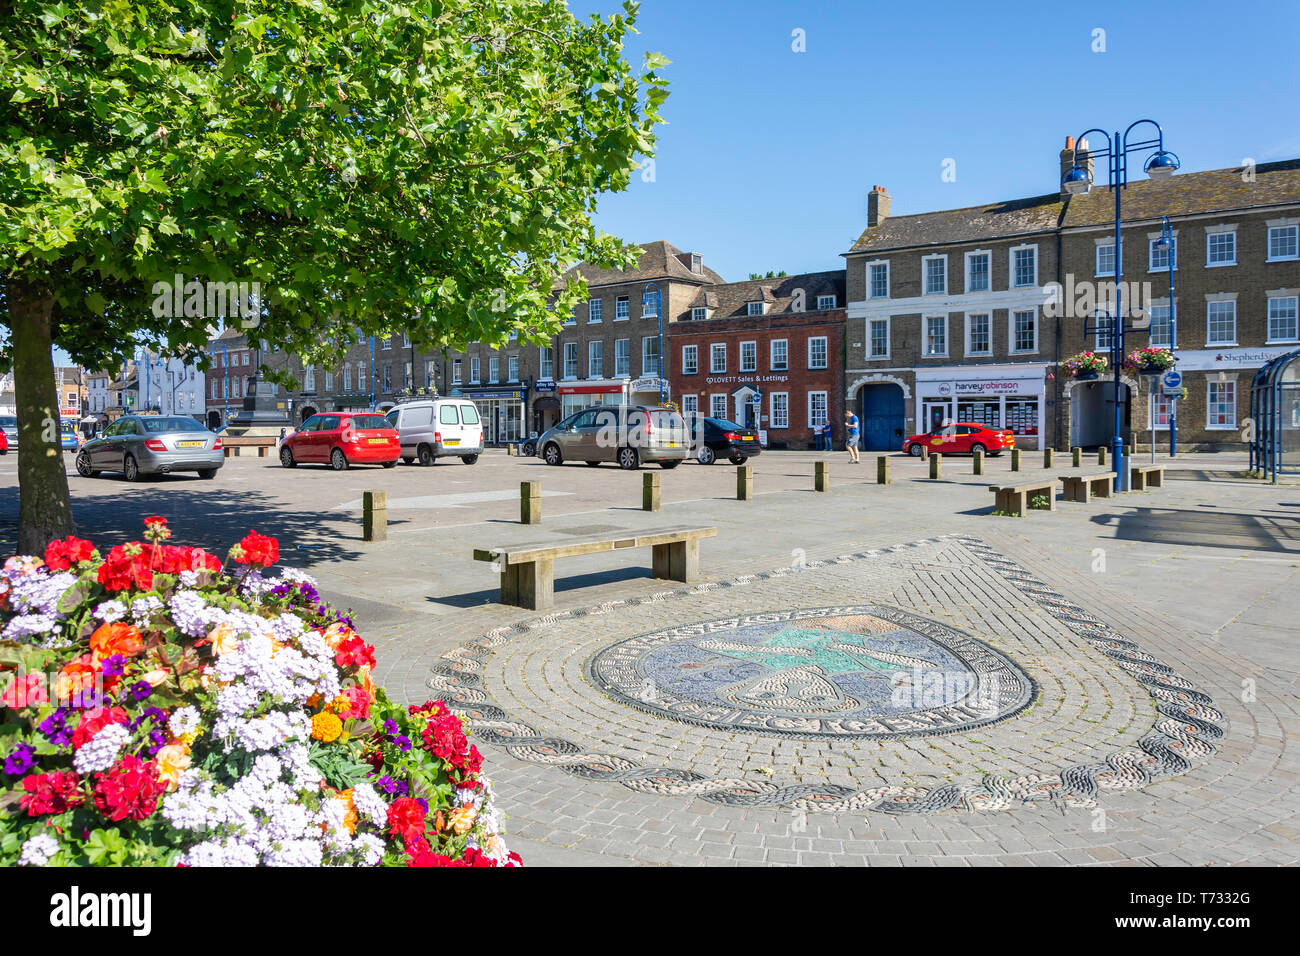 Pavement mosaic, Market Square, St Neots, Cambridgeshire, England, United Kingdom Stock Photo